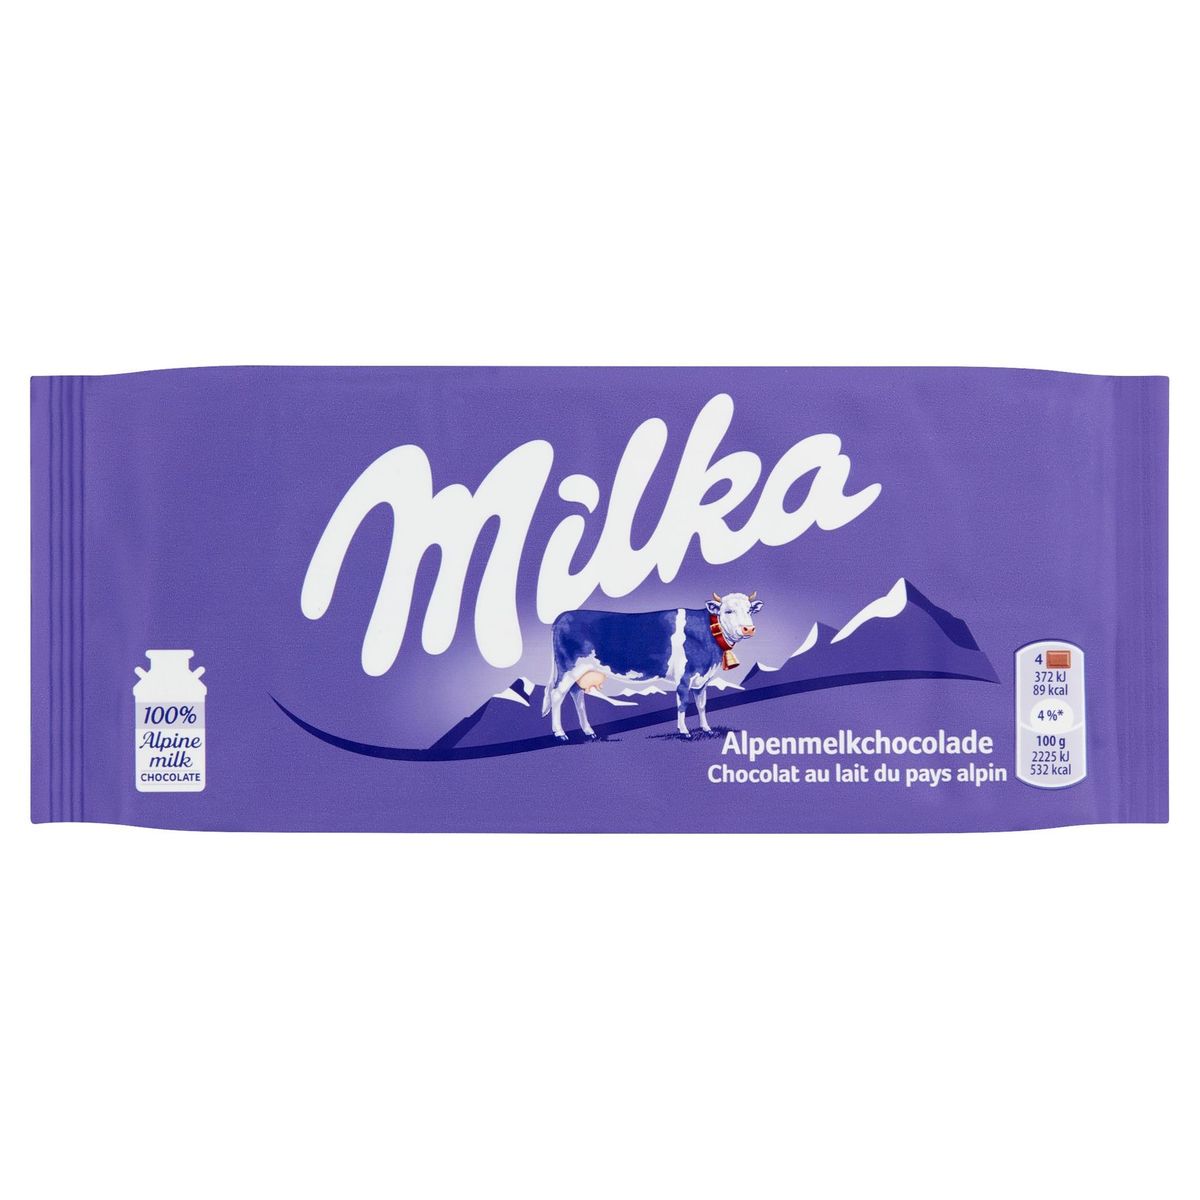 Milka Tablette De Chocolat Au Lait 100 g